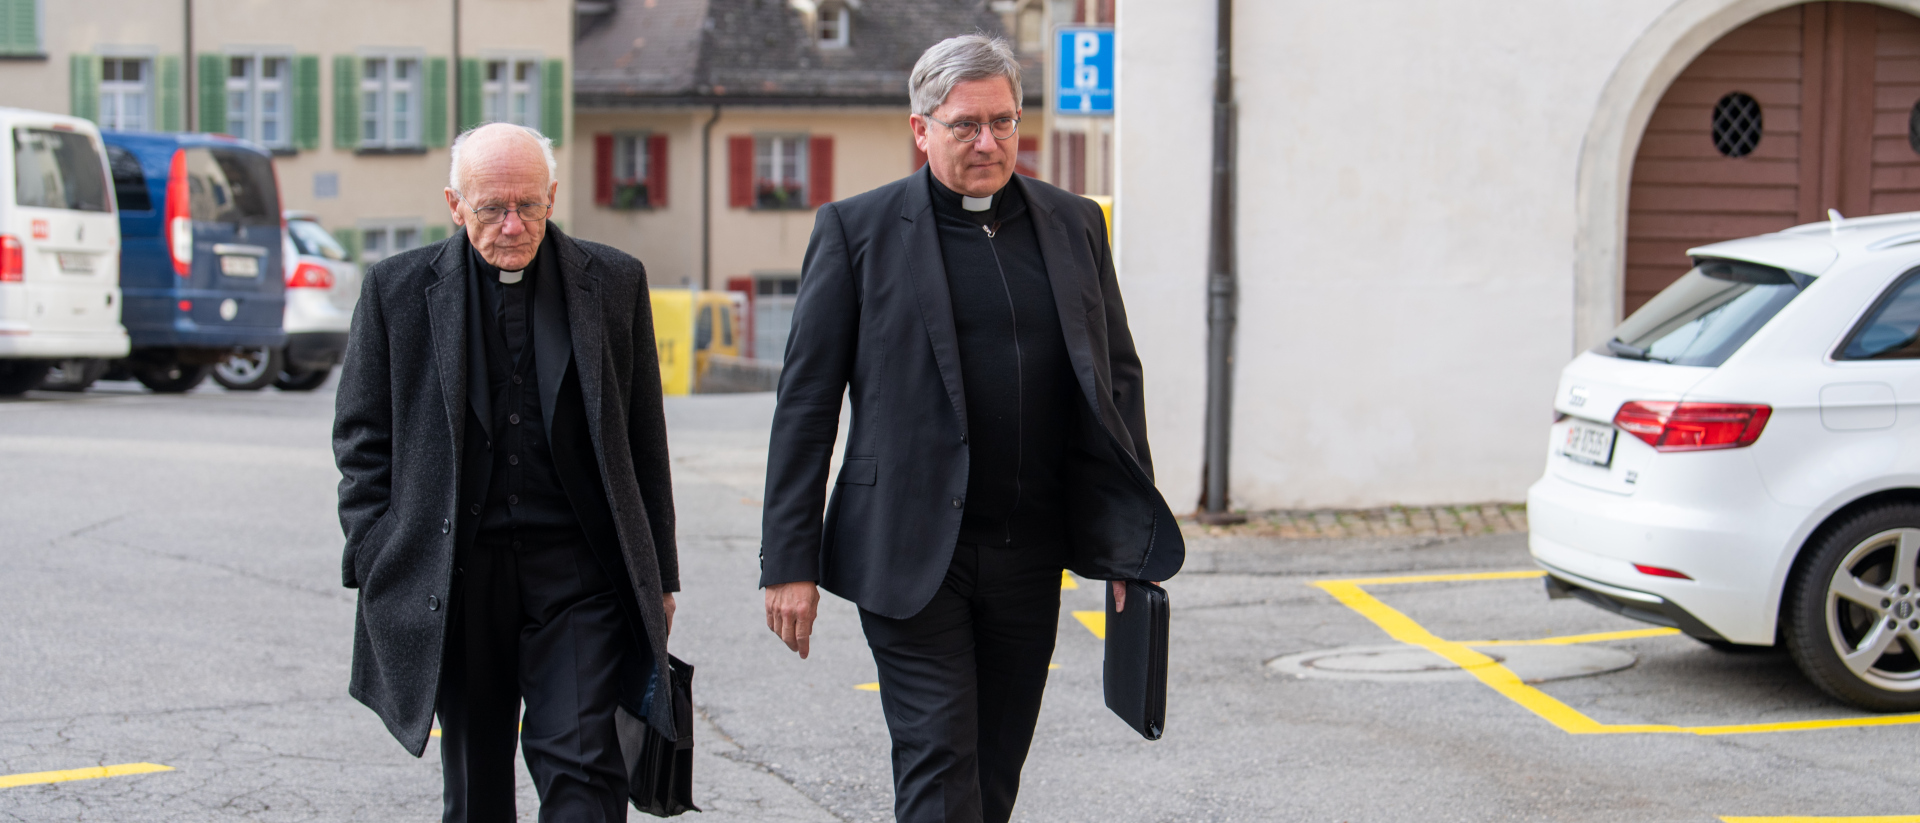 Die Domherren Martin Bürgi (li.) und Roland Graf auf dem Weg ins bischöfliche Schloss